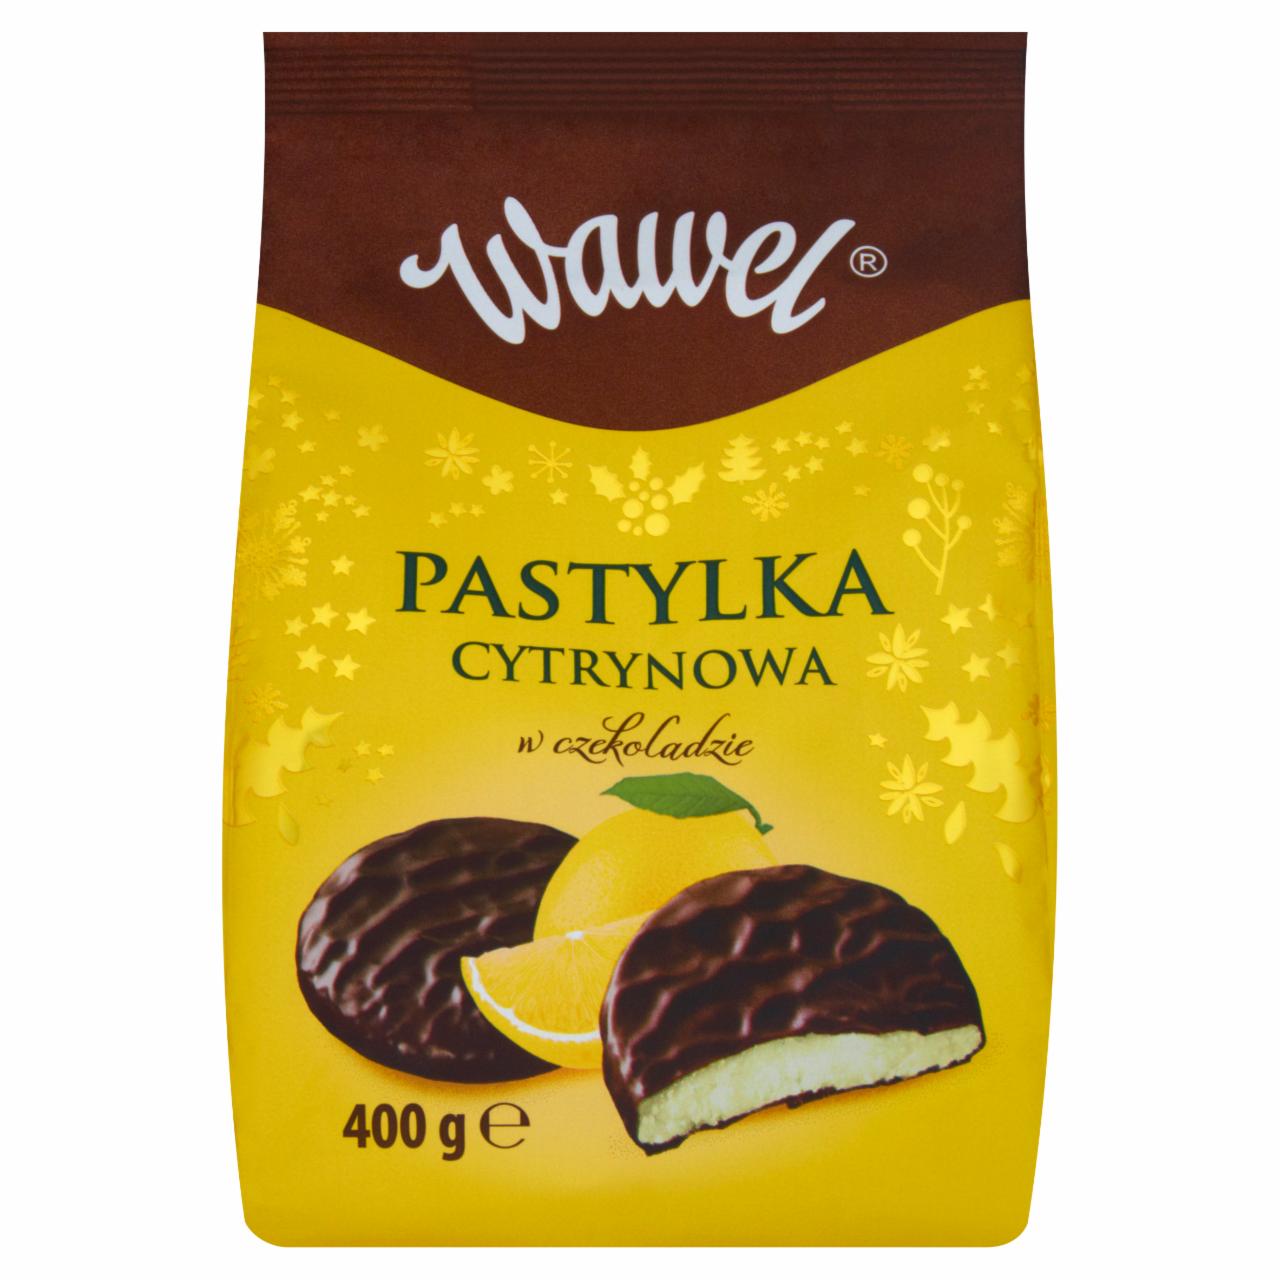 Zdjęcia - Wawel Pastylka cytrynowa w czekoladzie 400 g